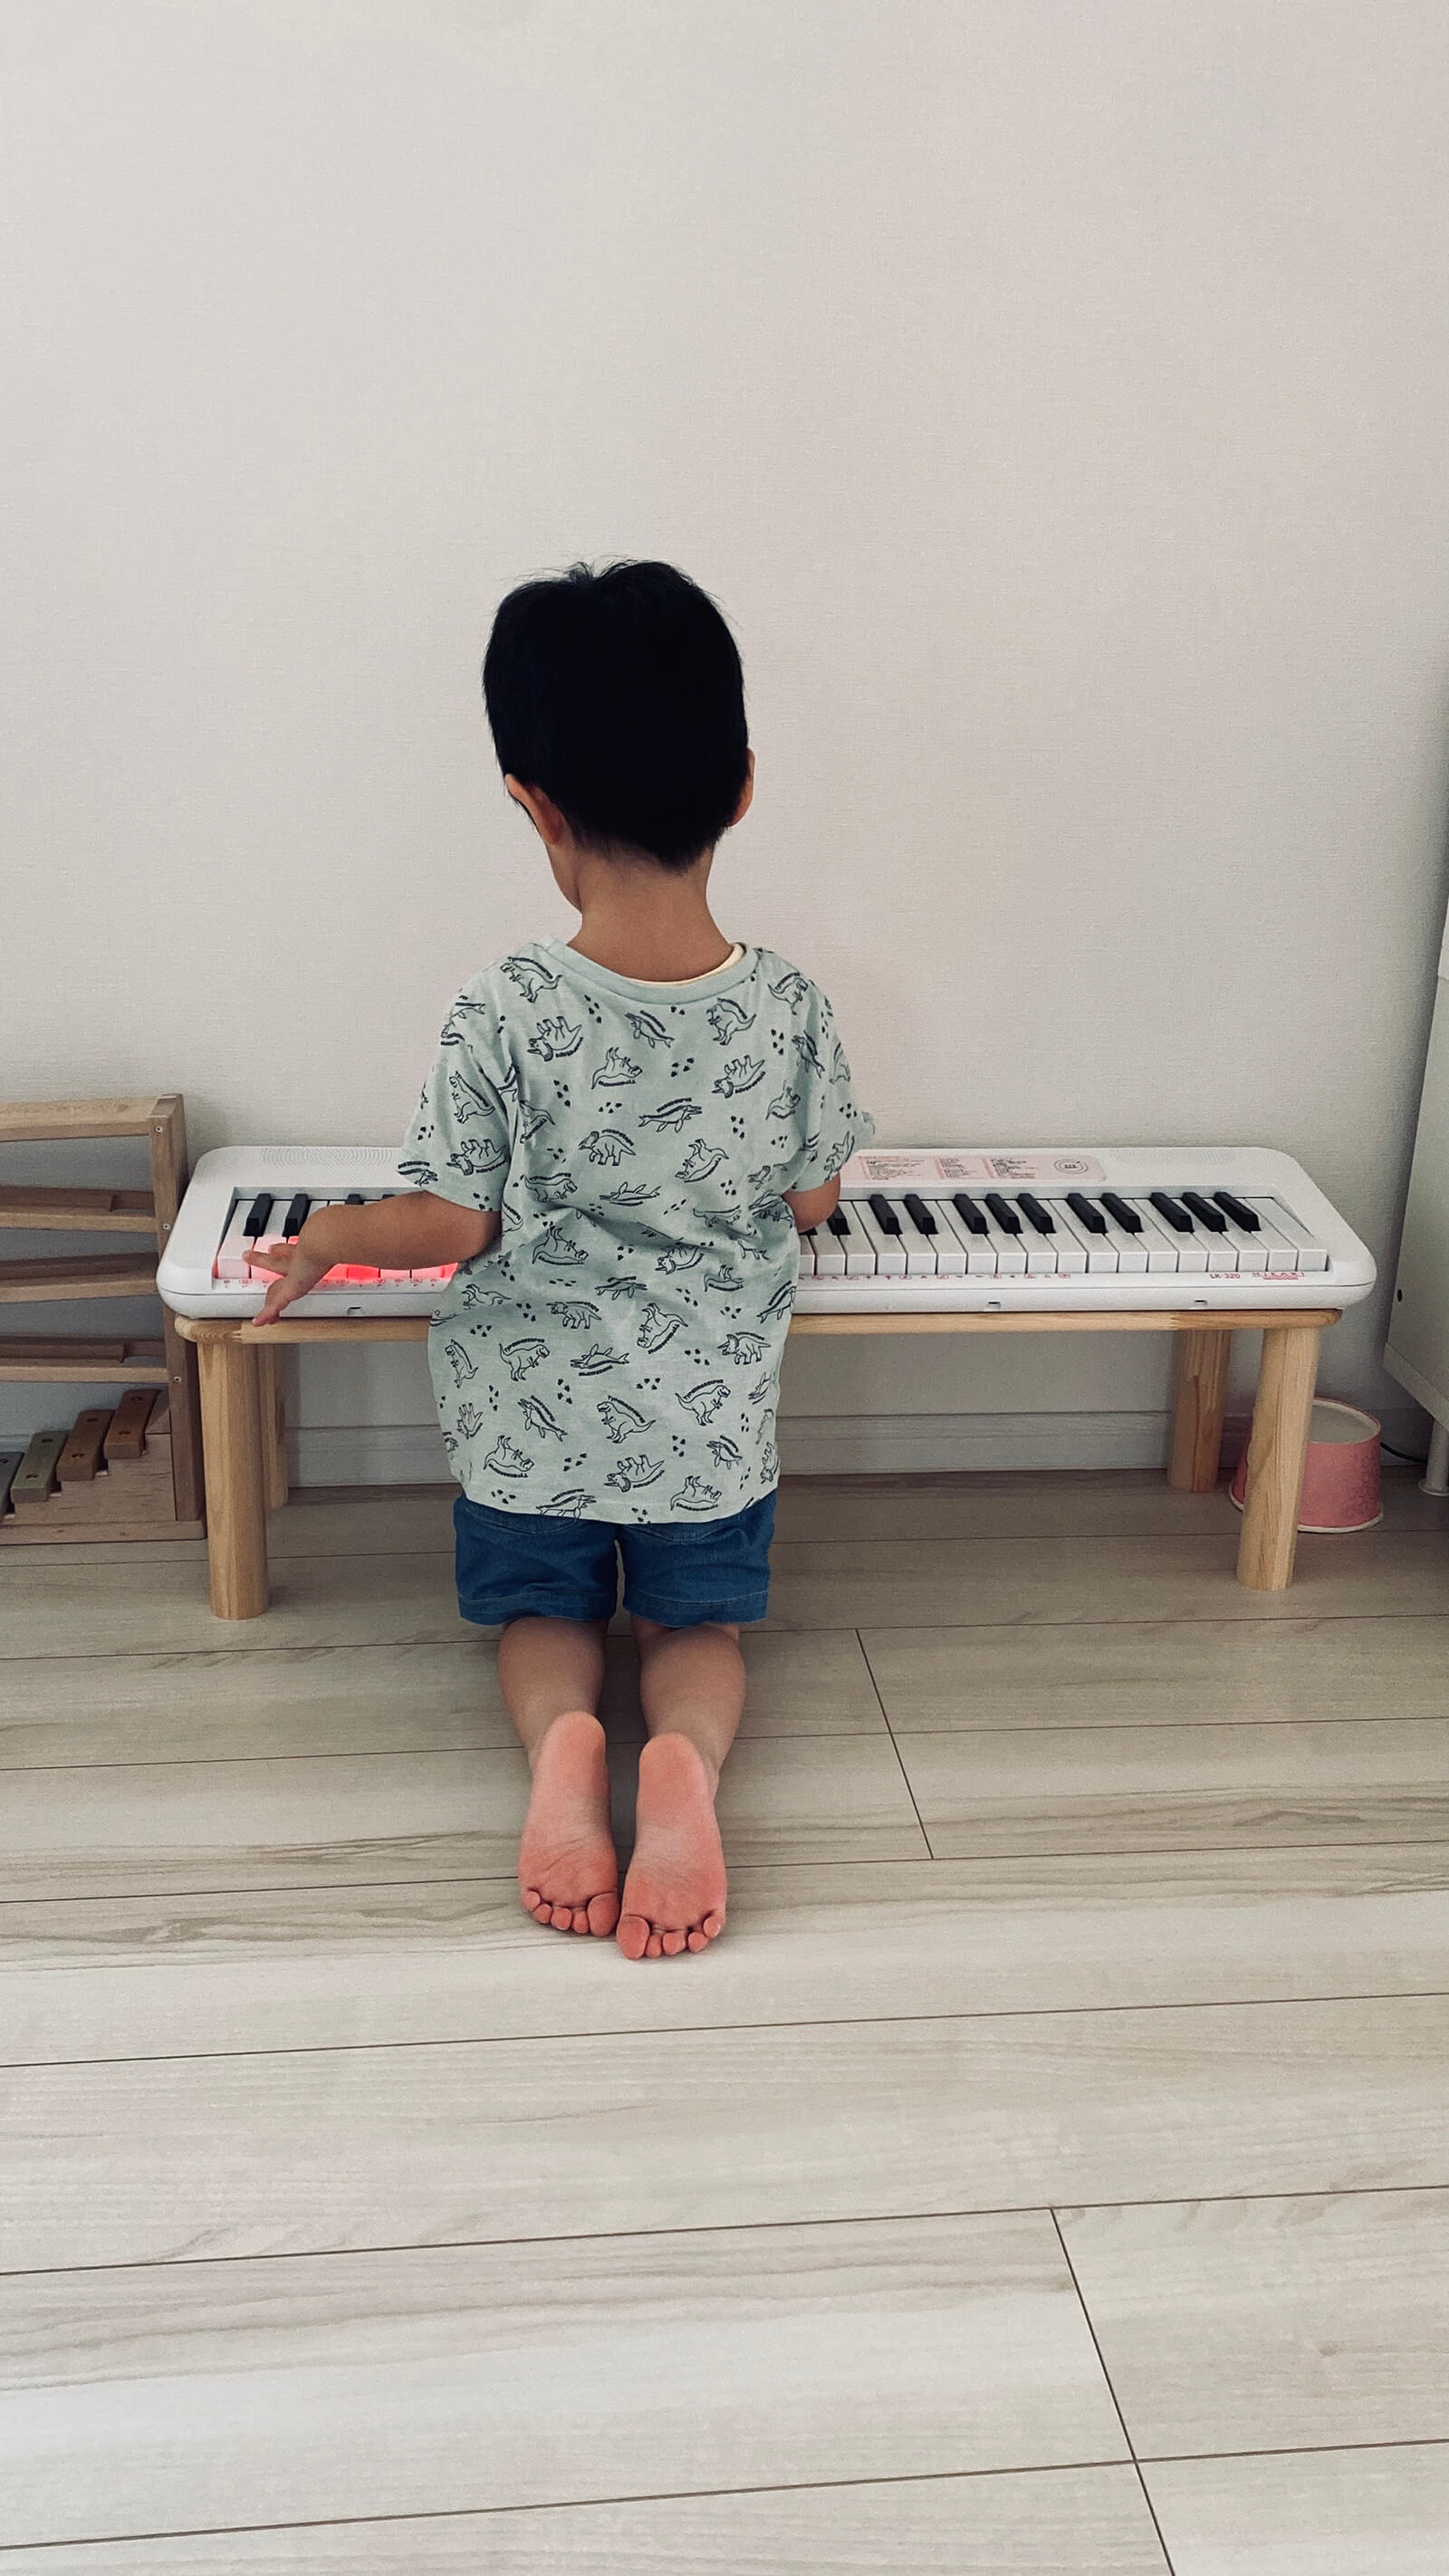 クラシック音楽に合わせてピアノを弾く子供の写真